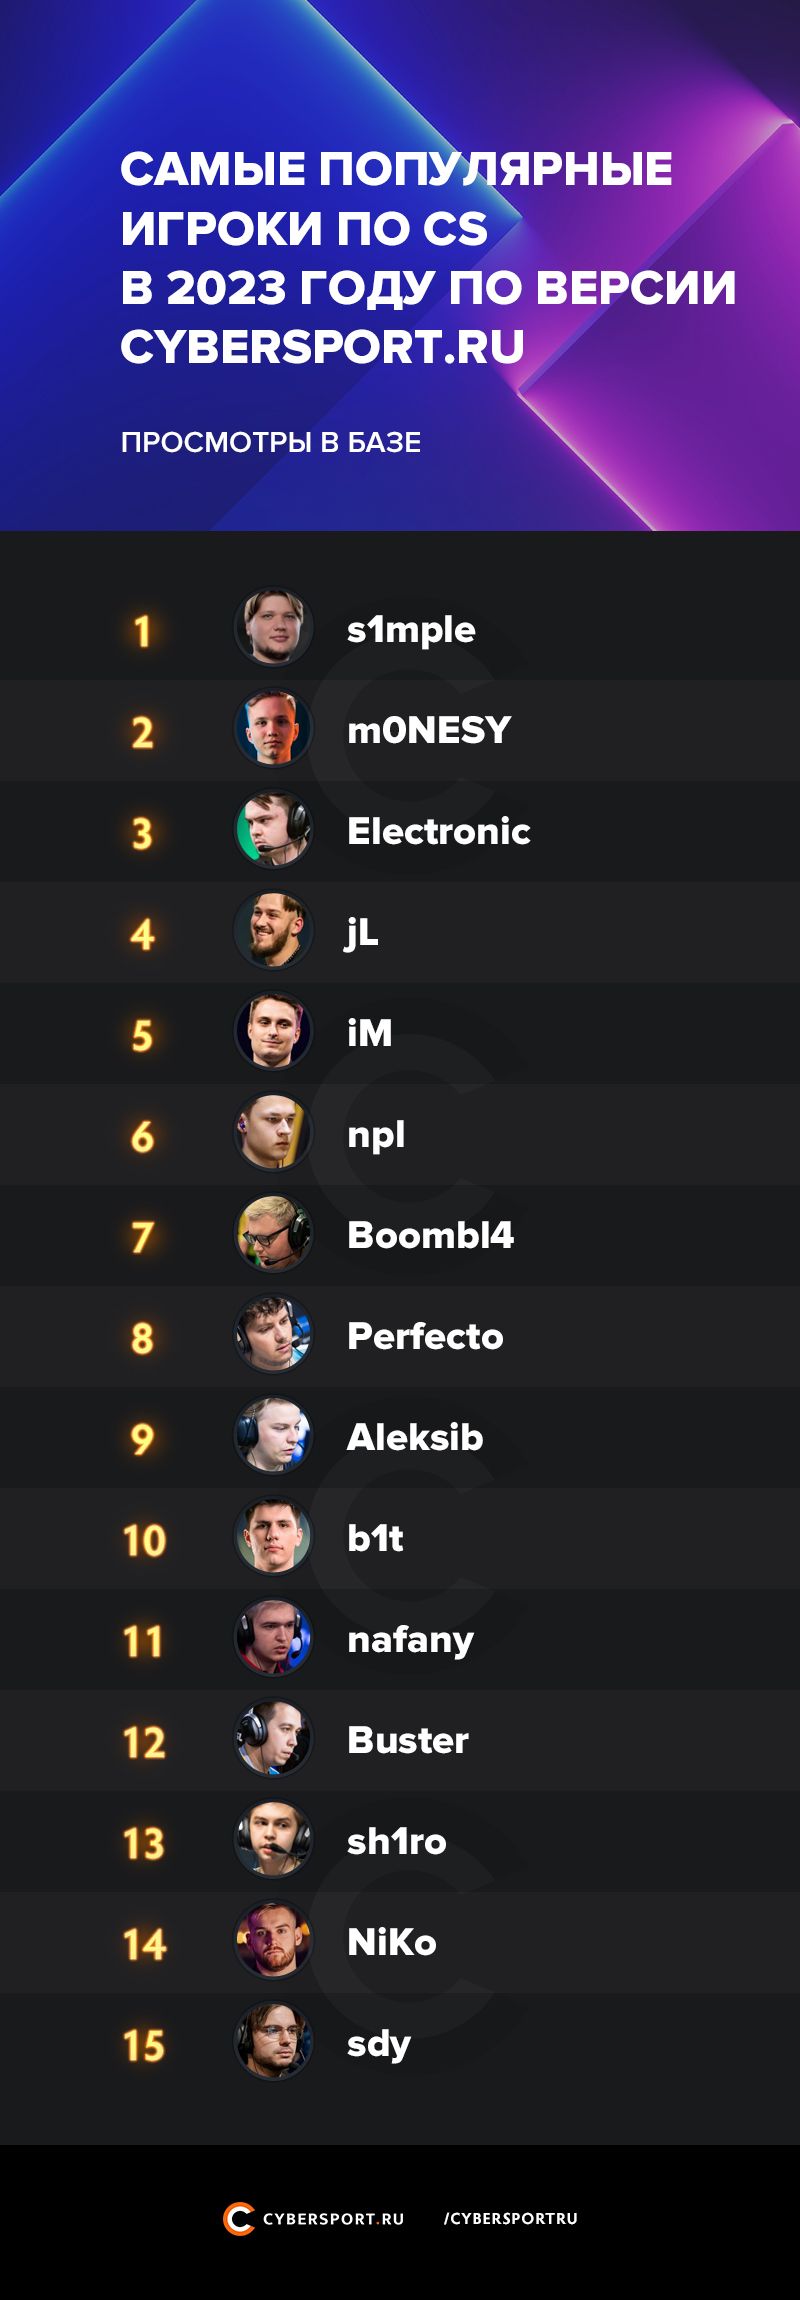 Топ популярных игроков на Cybersport.ru